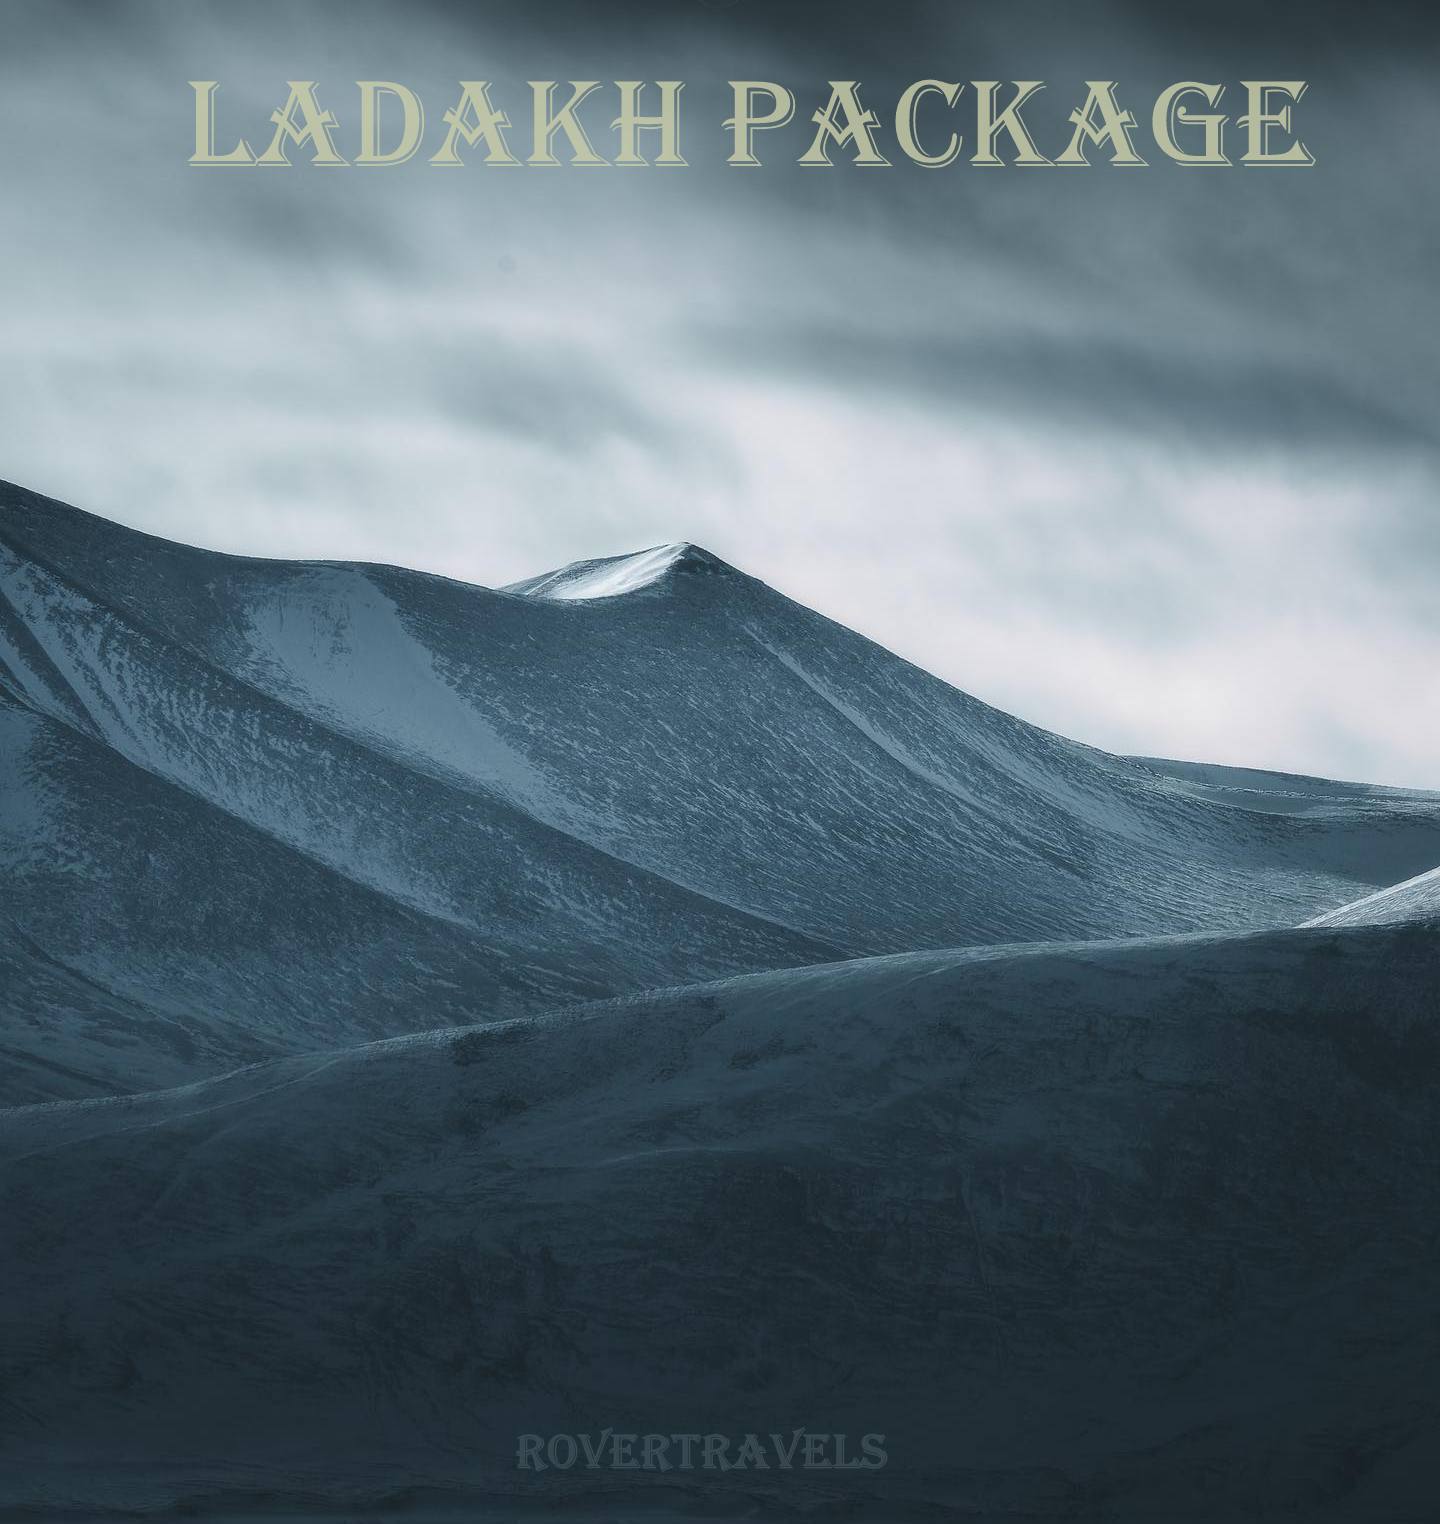 leh ladakh tour packages